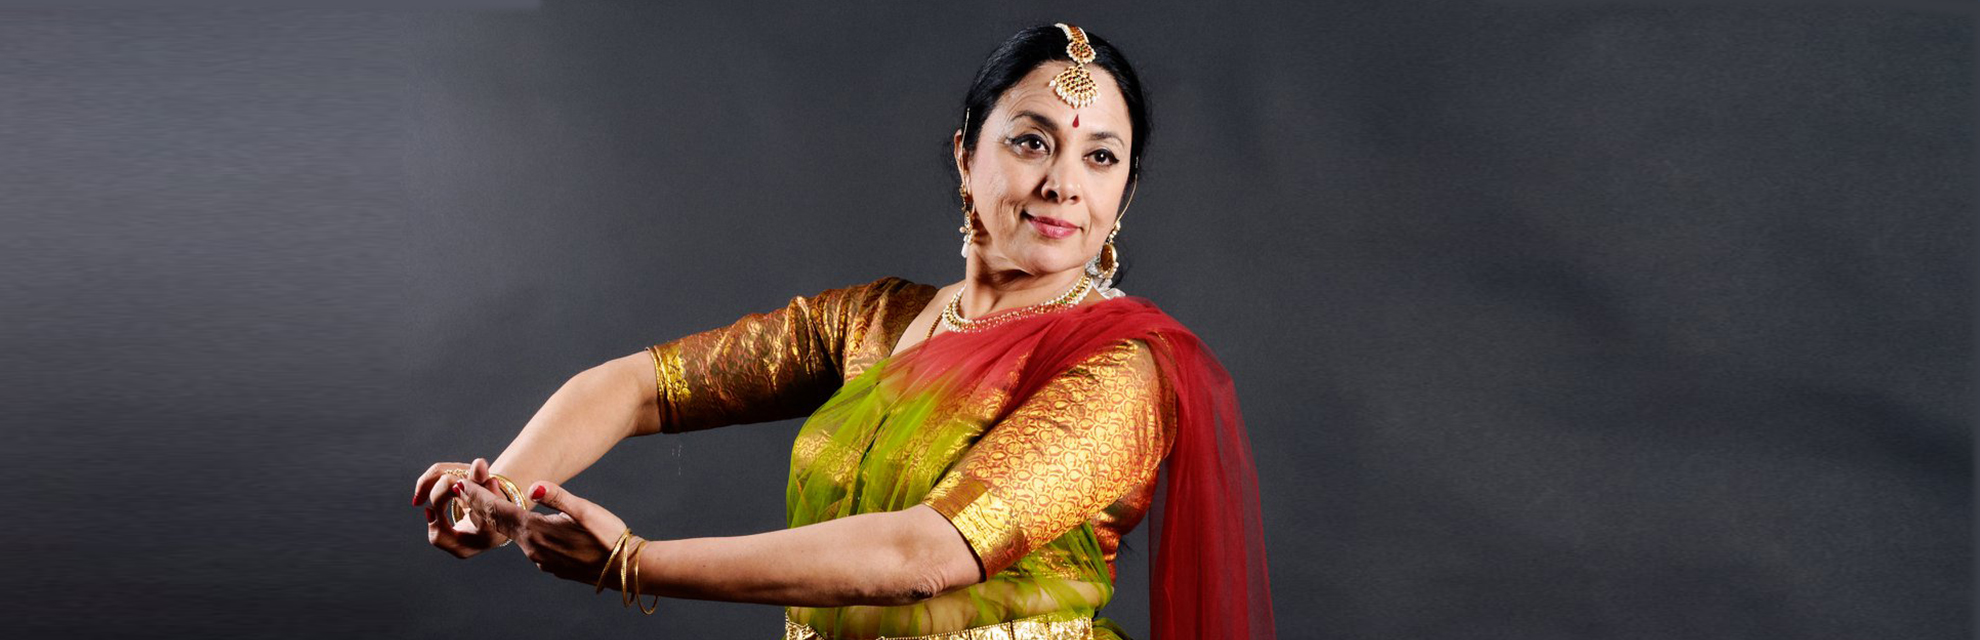 راقصة كاثاك الدكتورة ماليني رانجاناثان هي سفيرة الهند الثقافية في العالم